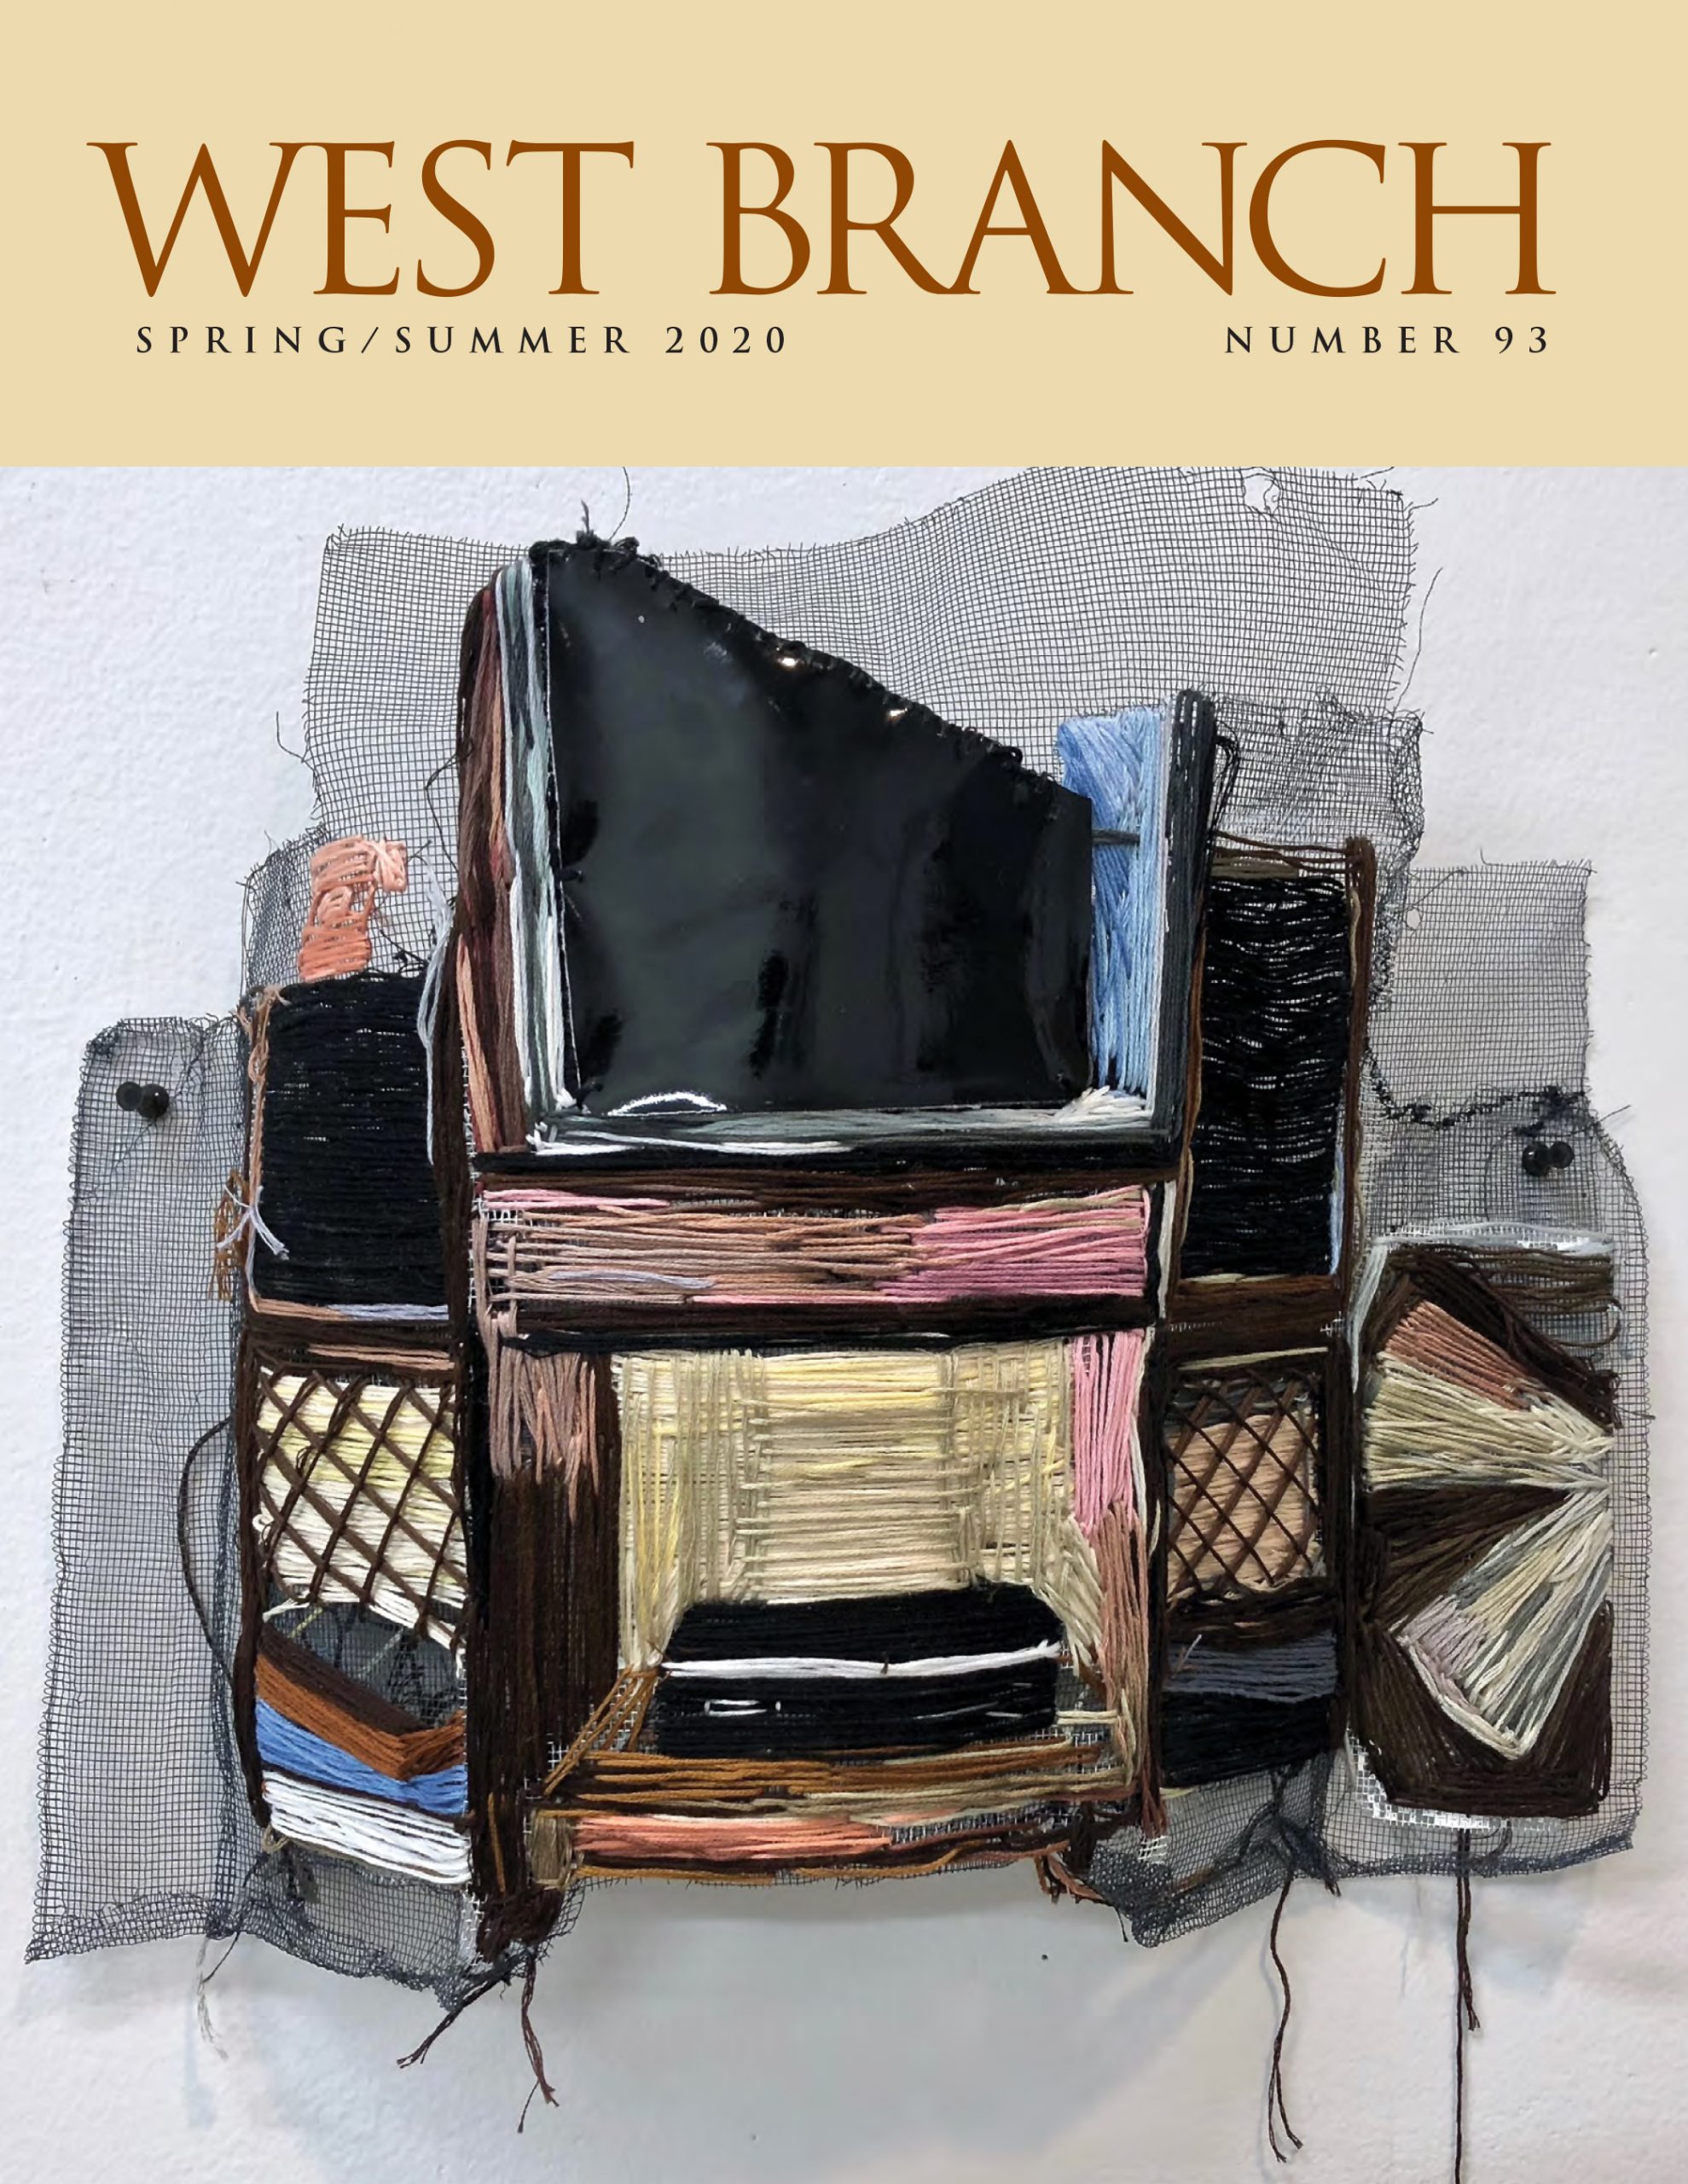 West Branch 93, Spring/Summer 2020